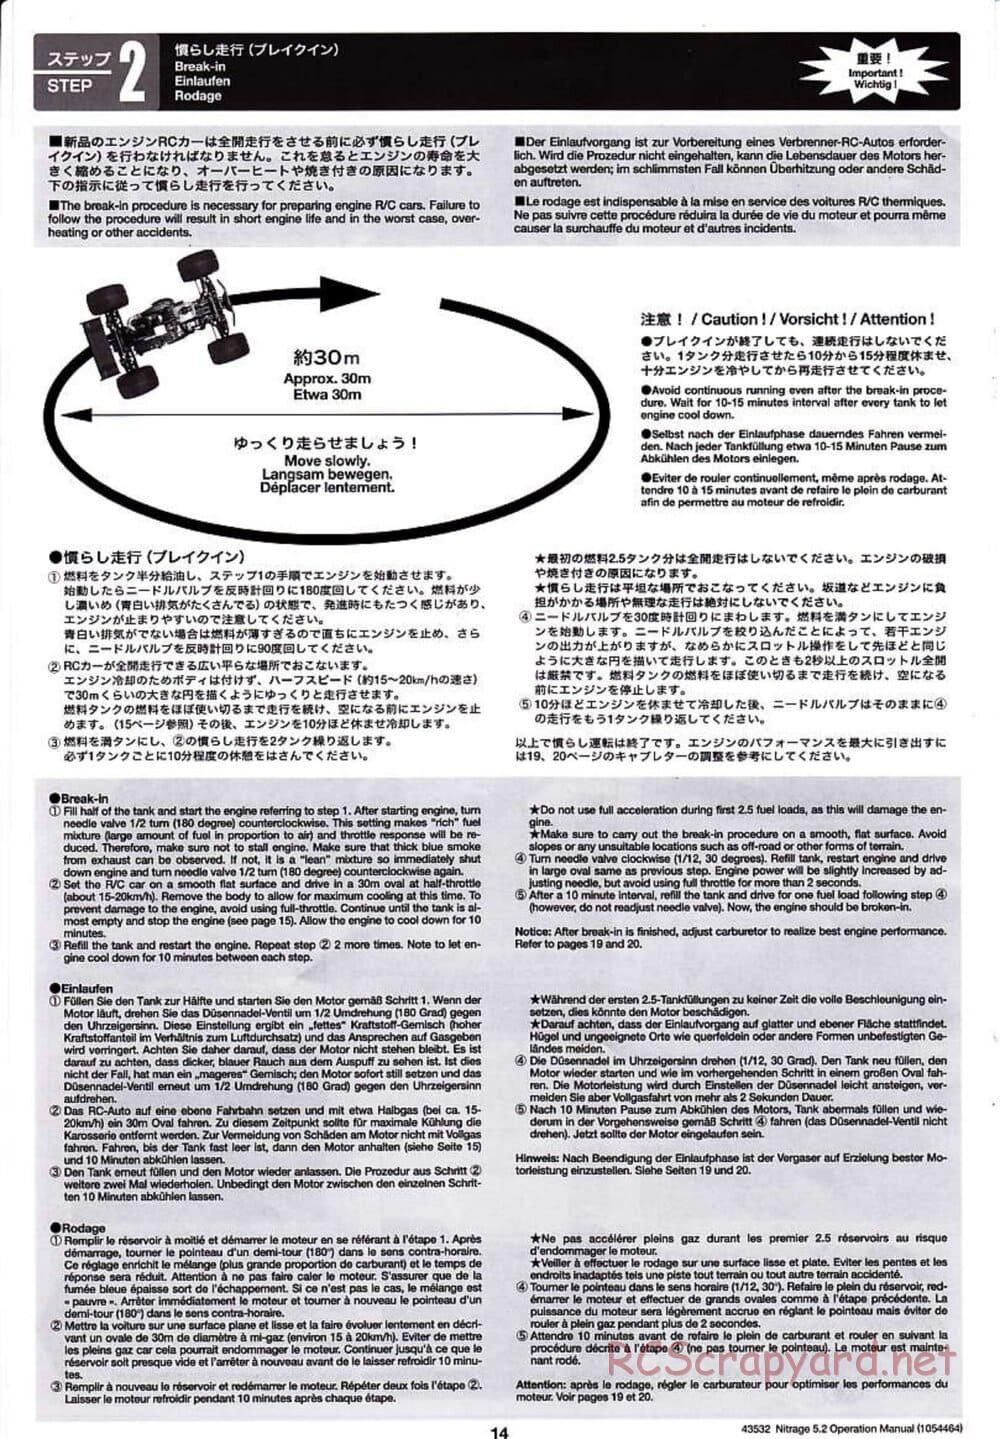 Tamiya - Nitrage 5.2 - Operating Manual - Page 14